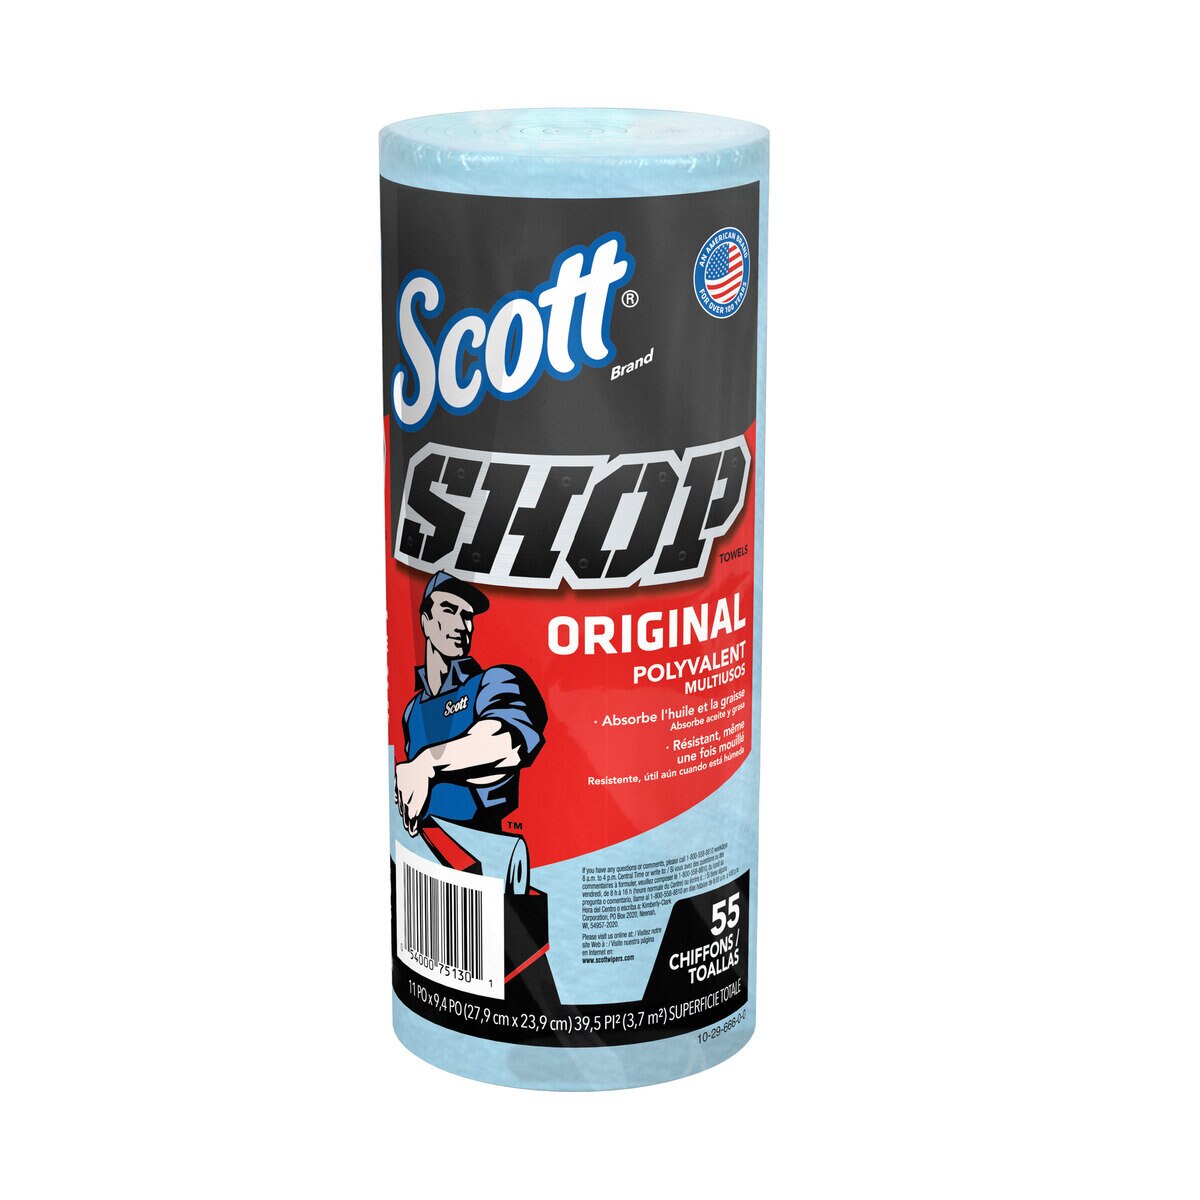 スコット ショップタオル ブルー 55枚 x 10 ロール Costco Japan